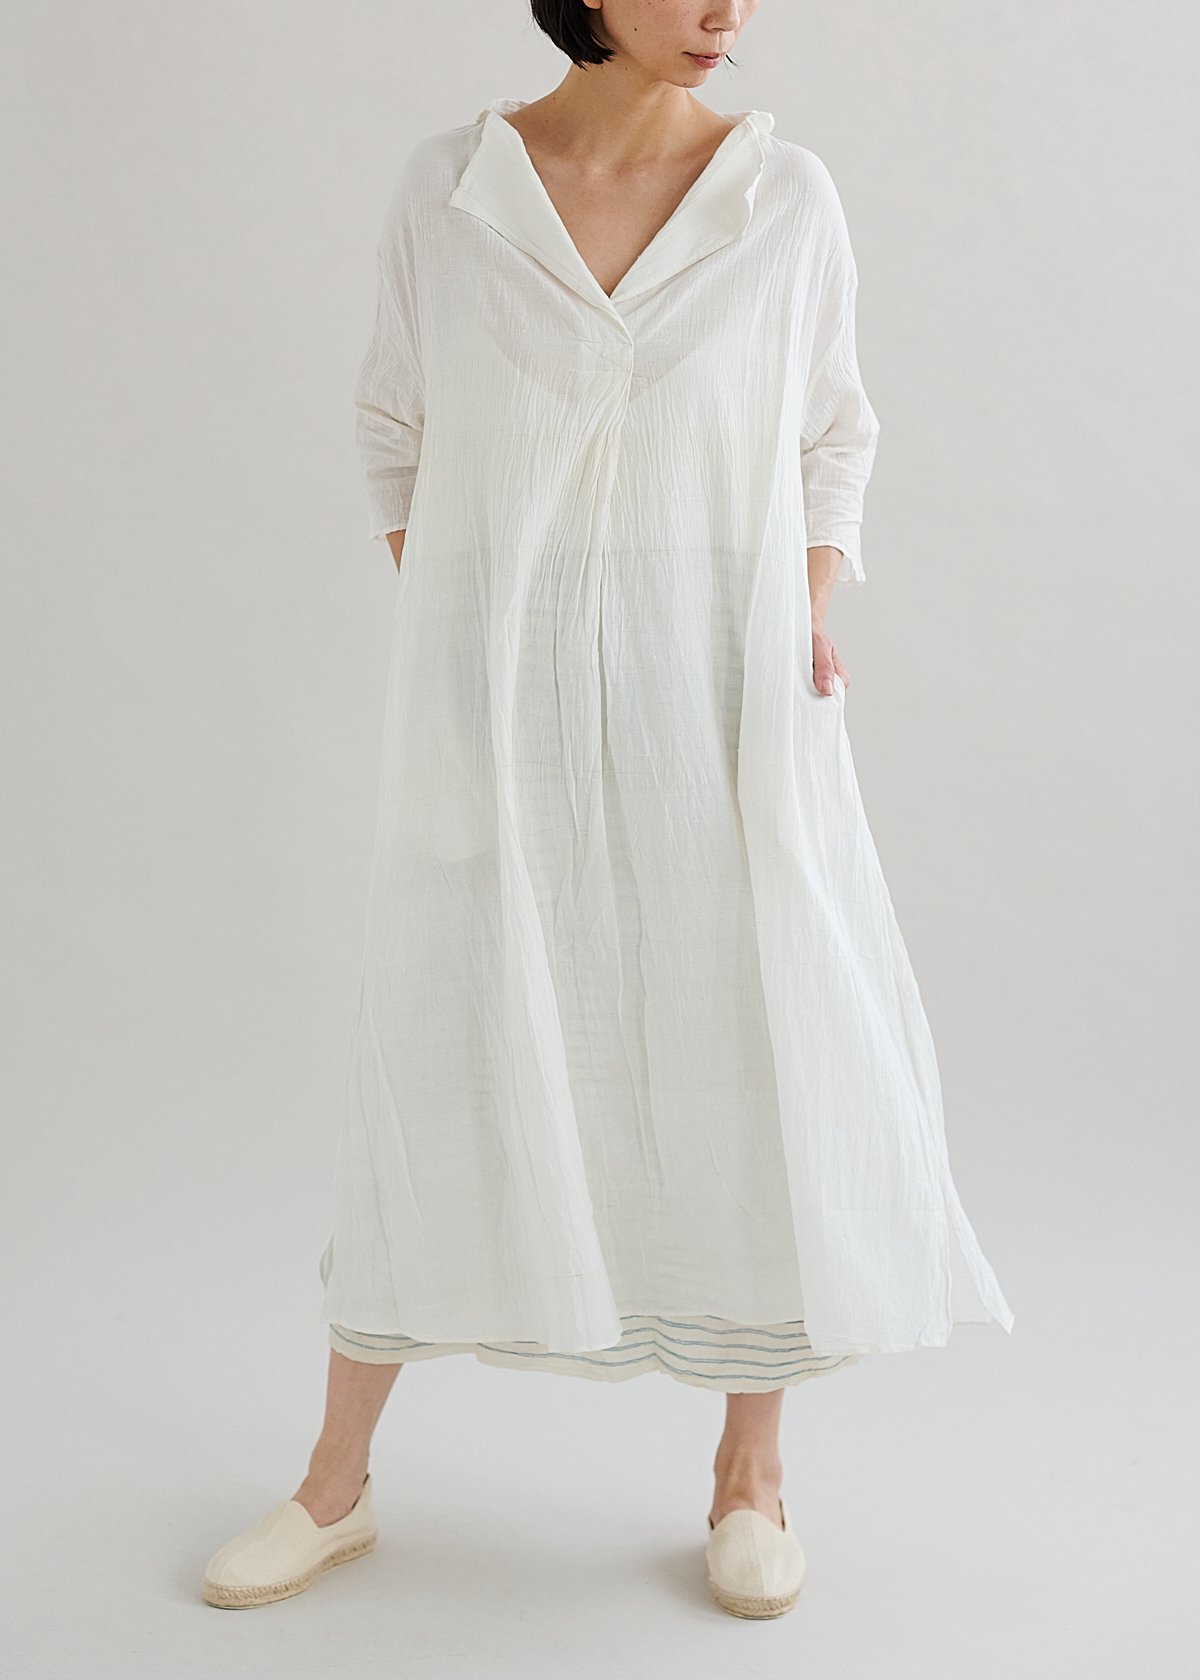 【予約商品】maku NOOR - 100% Cotton Handwoven Dress